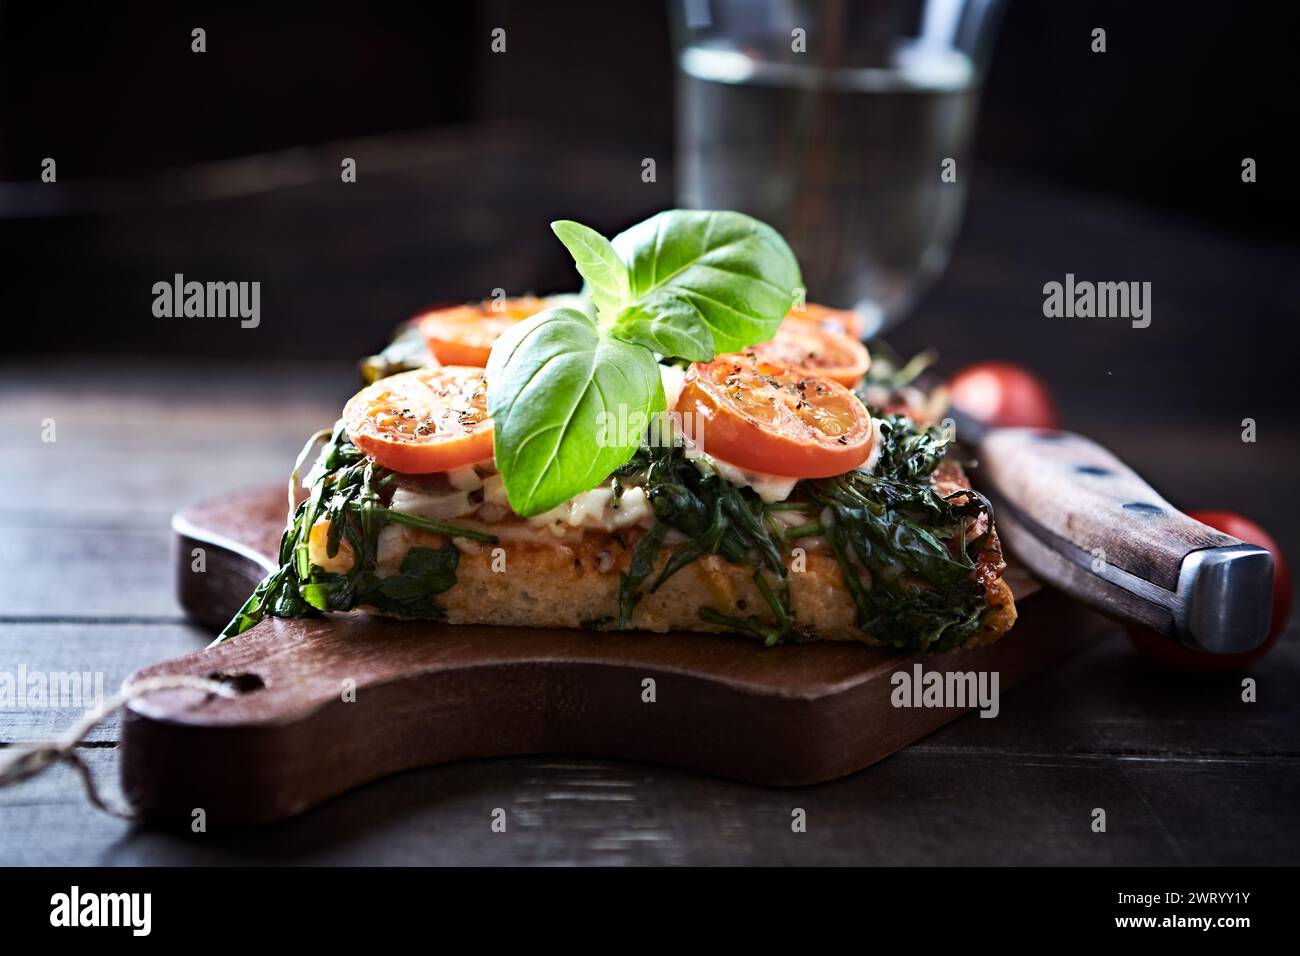 Offenes, geröstetes Käse-Sandwich mit Kirschtomaten, Spinat und frischem Basilikum. Brauner Holzhintergrund. Stockfoto